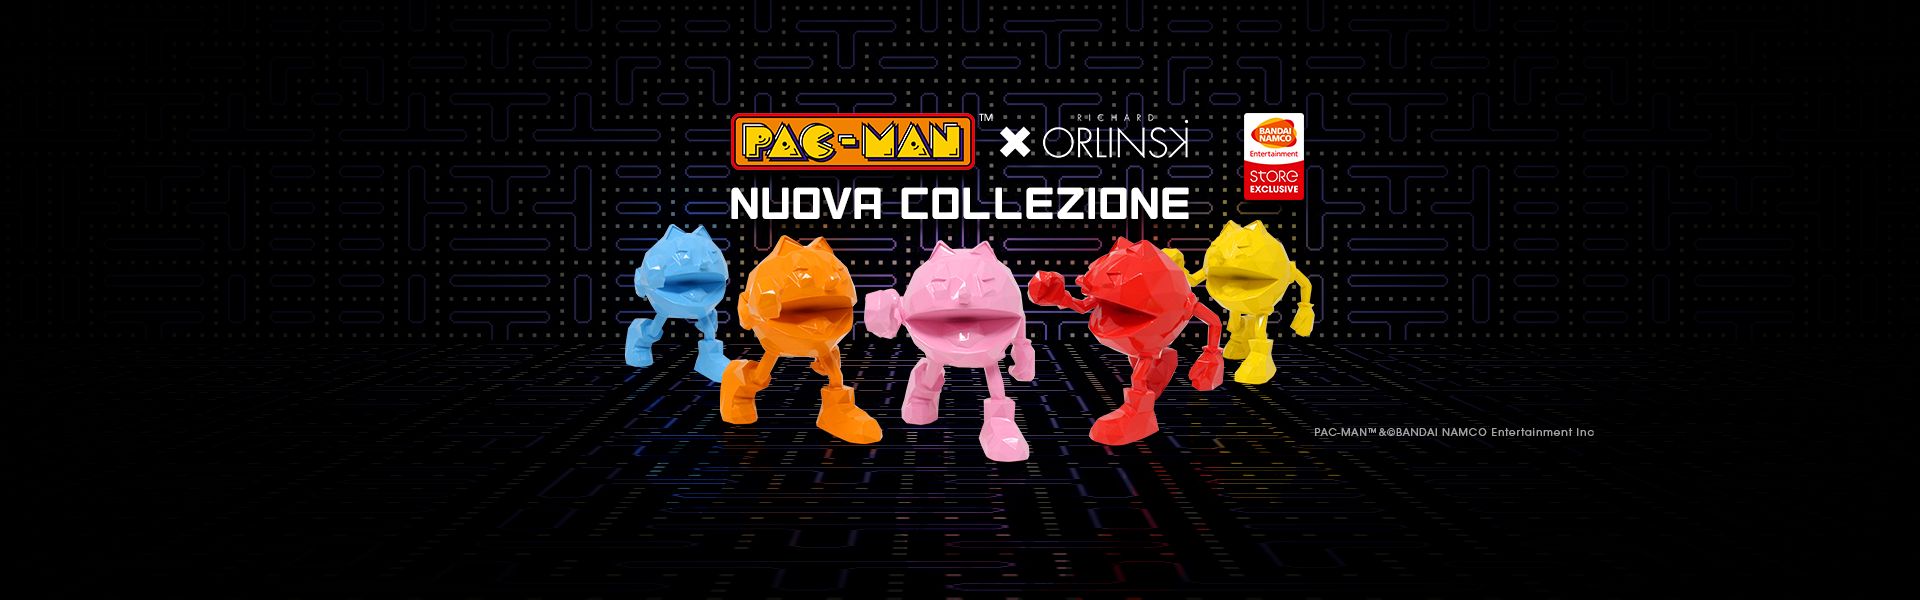 PAC-MAN x ORLINSKI : Nuova Collezione